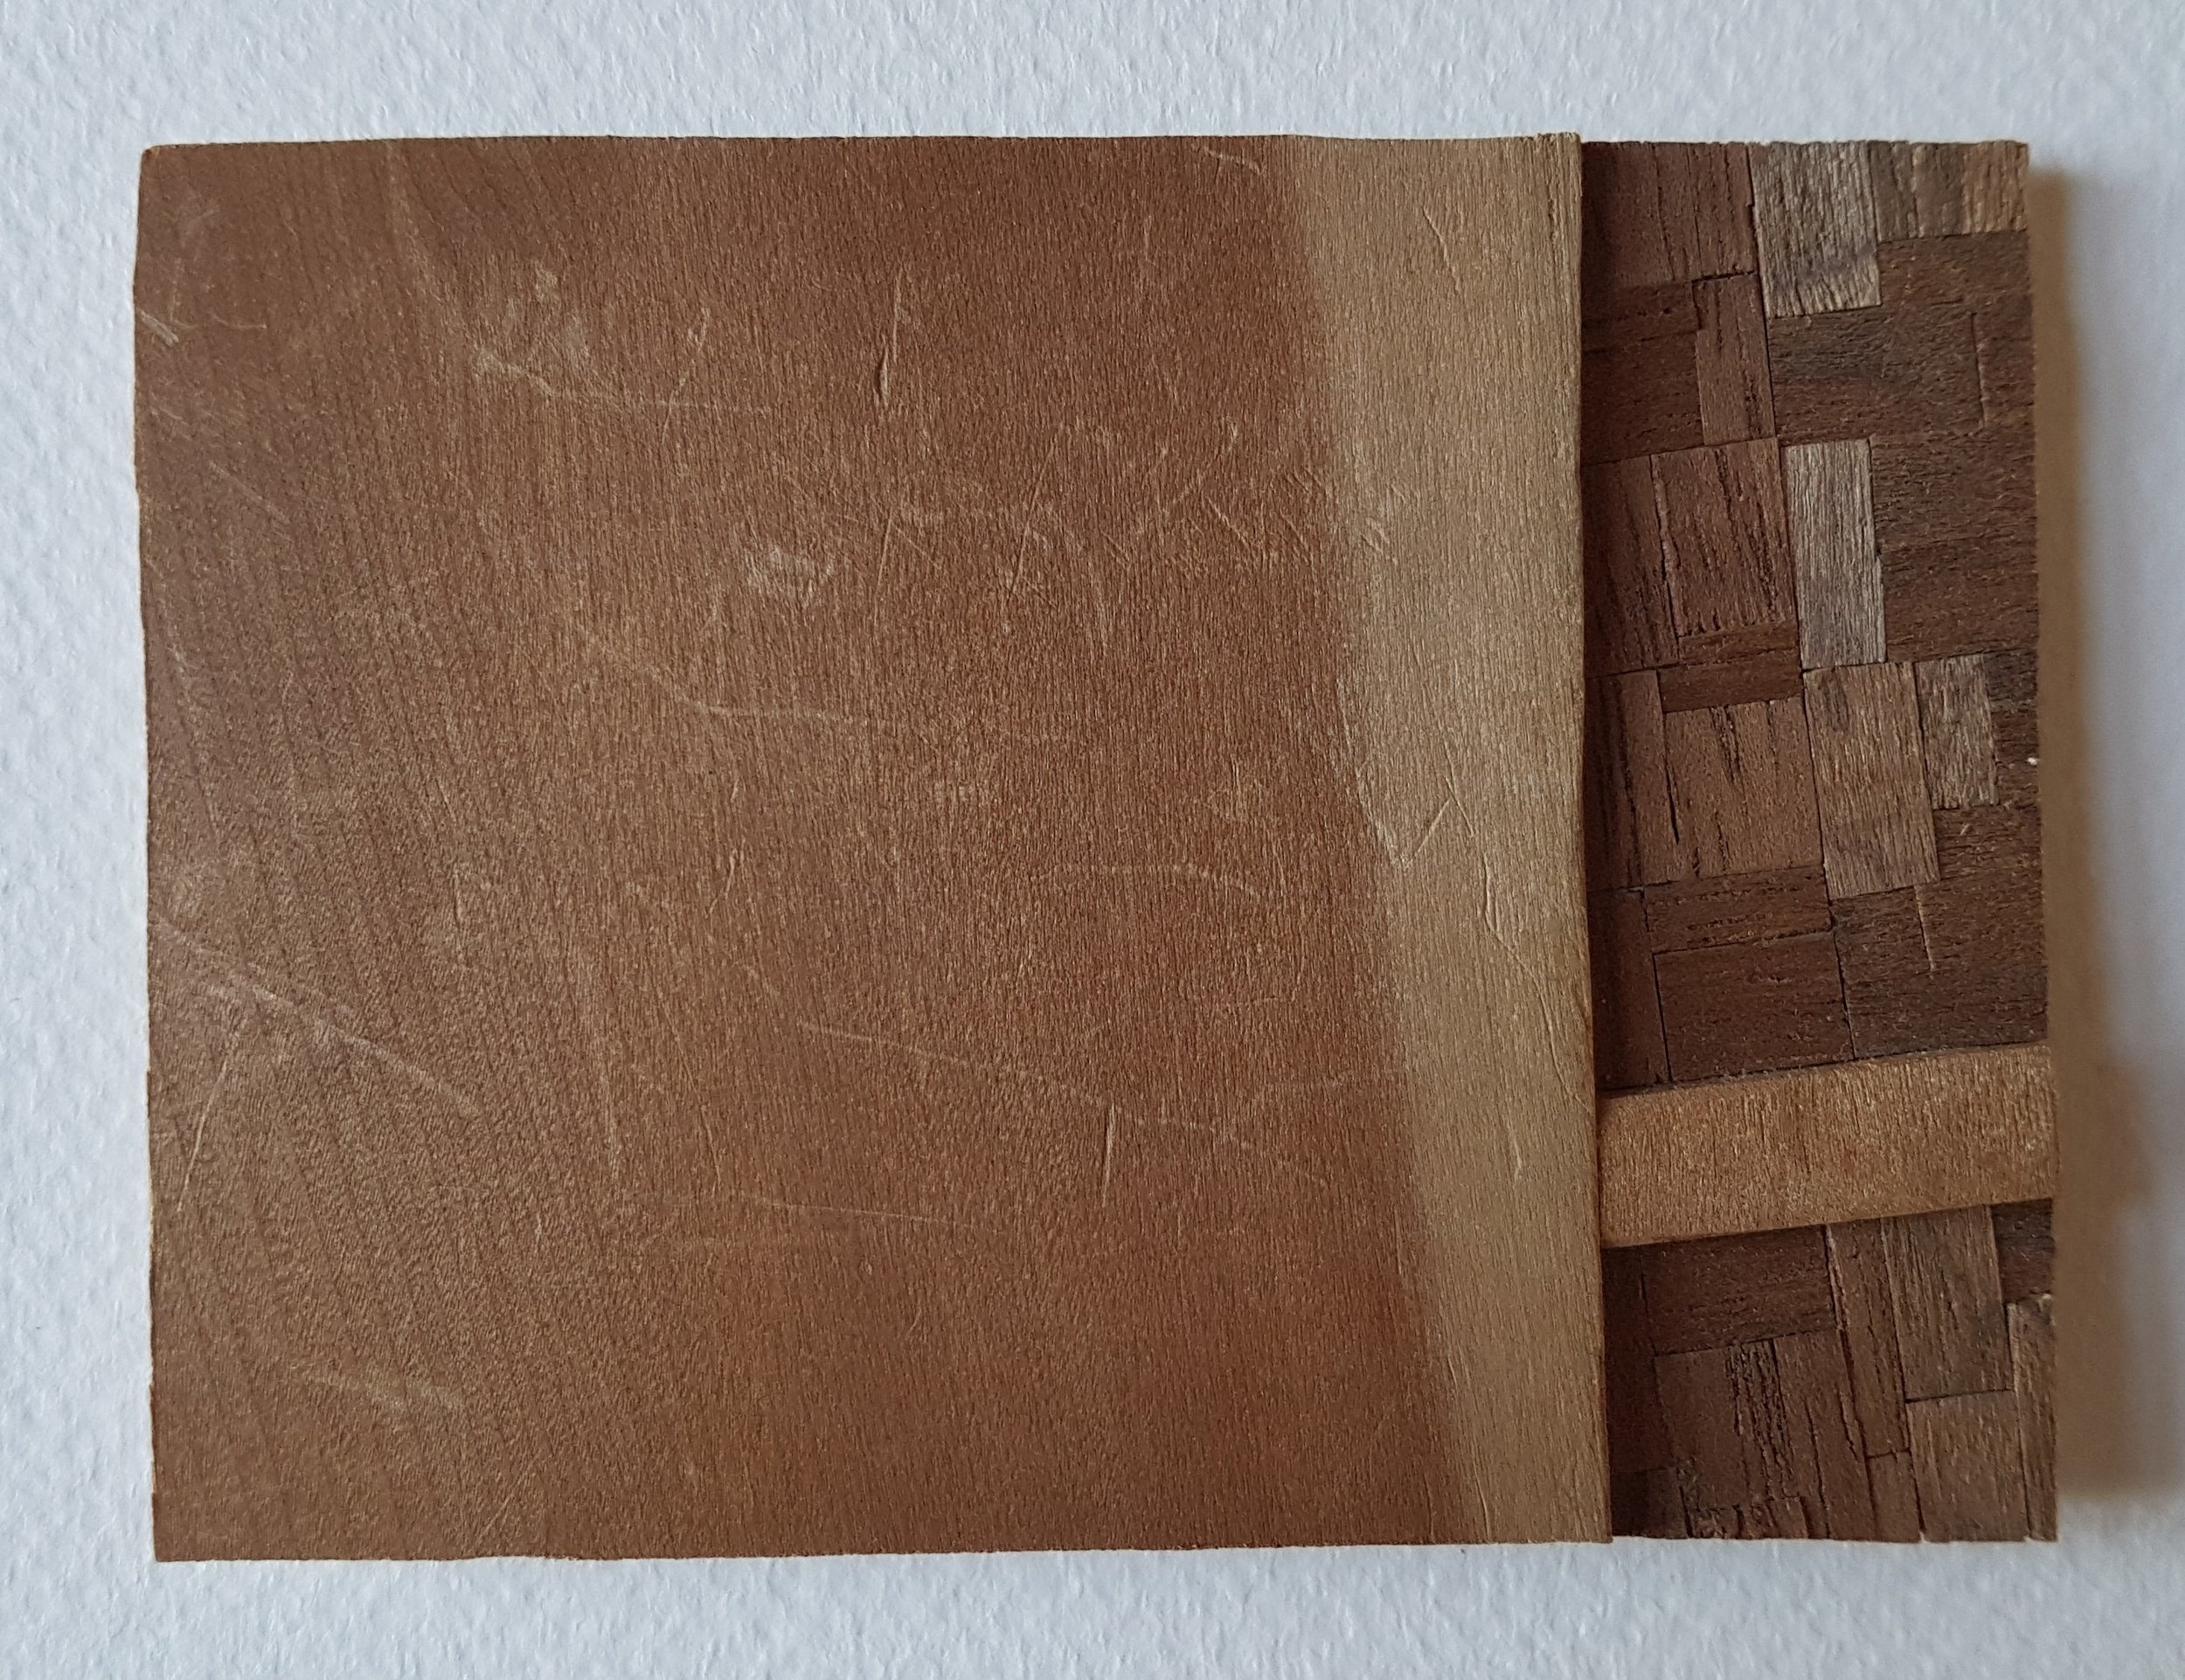 Series 64-24 (2013): wood veneers and mixed media 10cm x 8cm